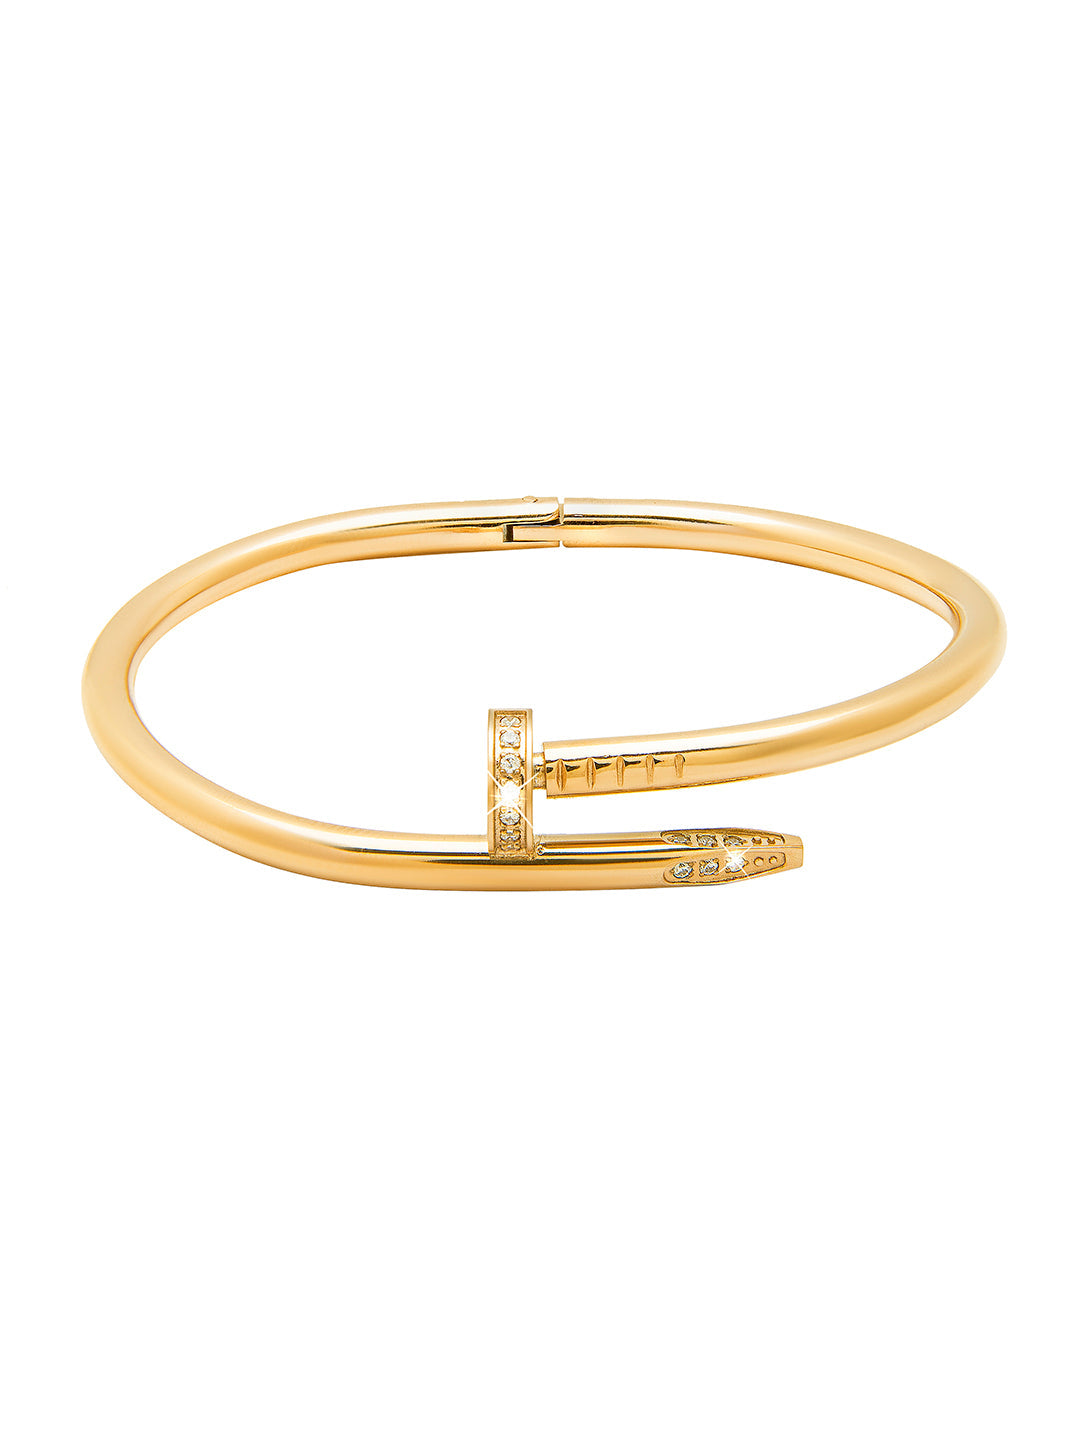 CRB6048617  Juste un Clou bracelet  Yellow gold diamonds  Cartier